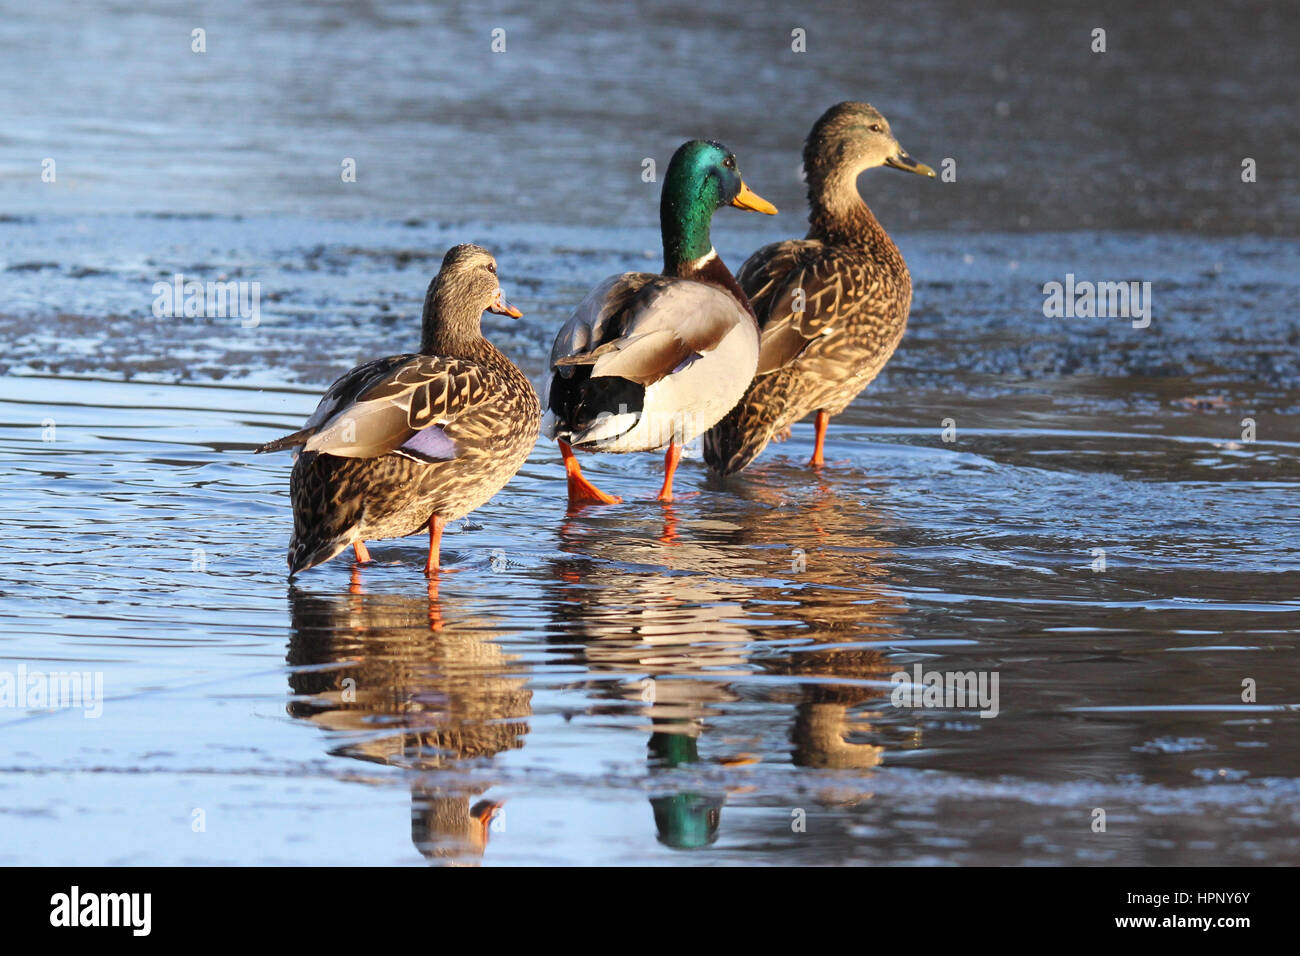 Three mallard ducks walking on a frozen pond Stock Photo